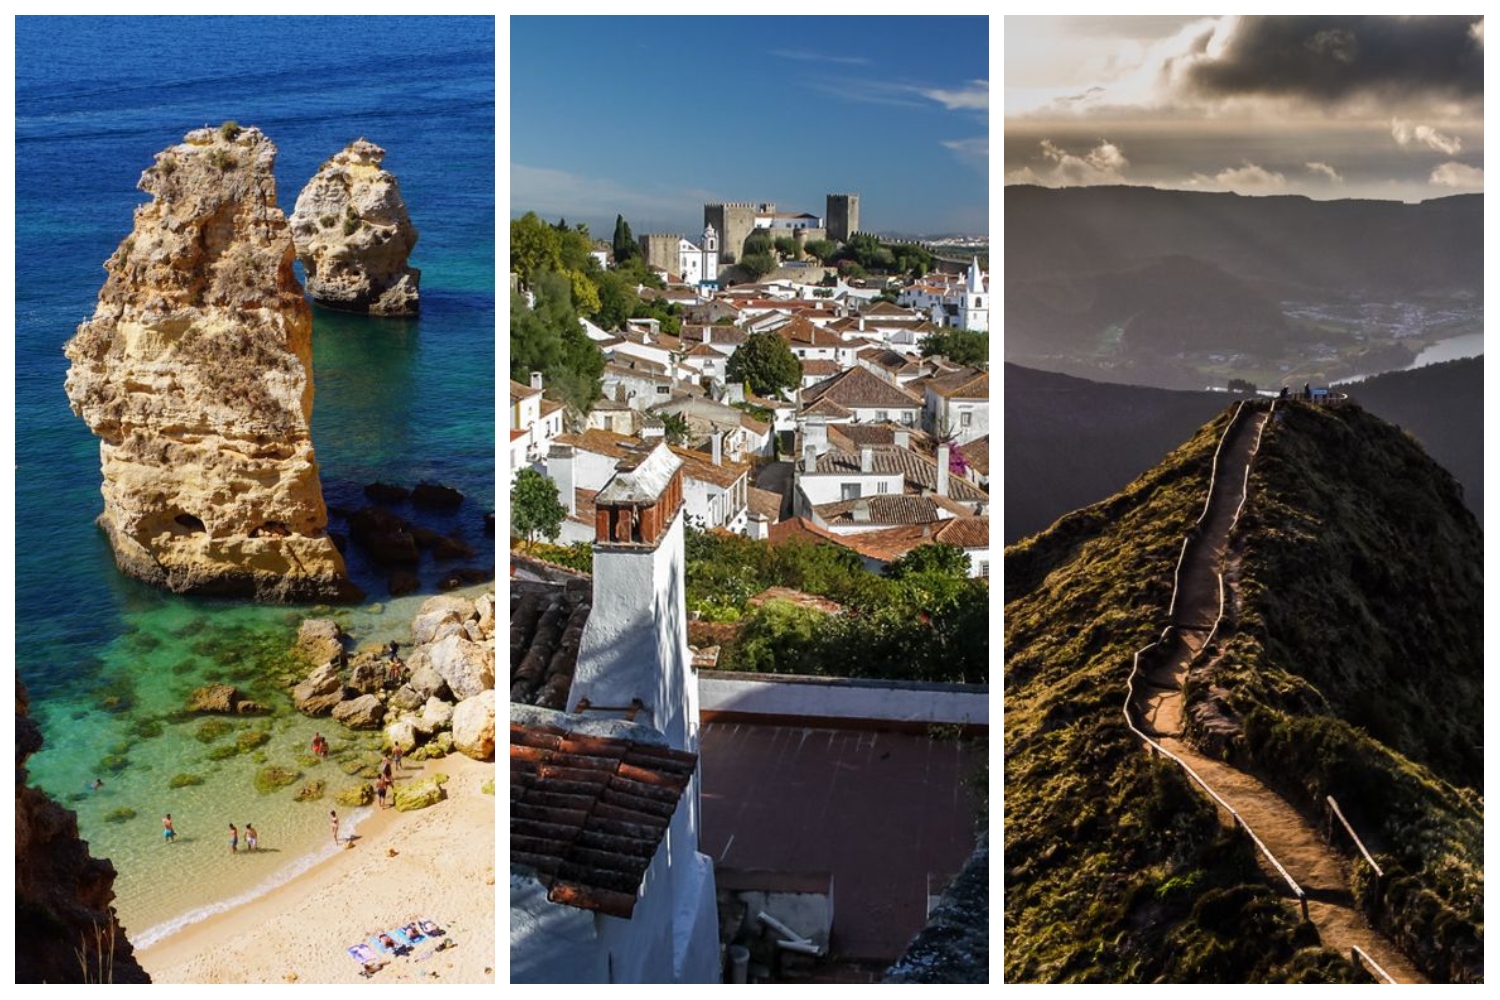 Les lieux à ne pas manquer absolument au Portugal